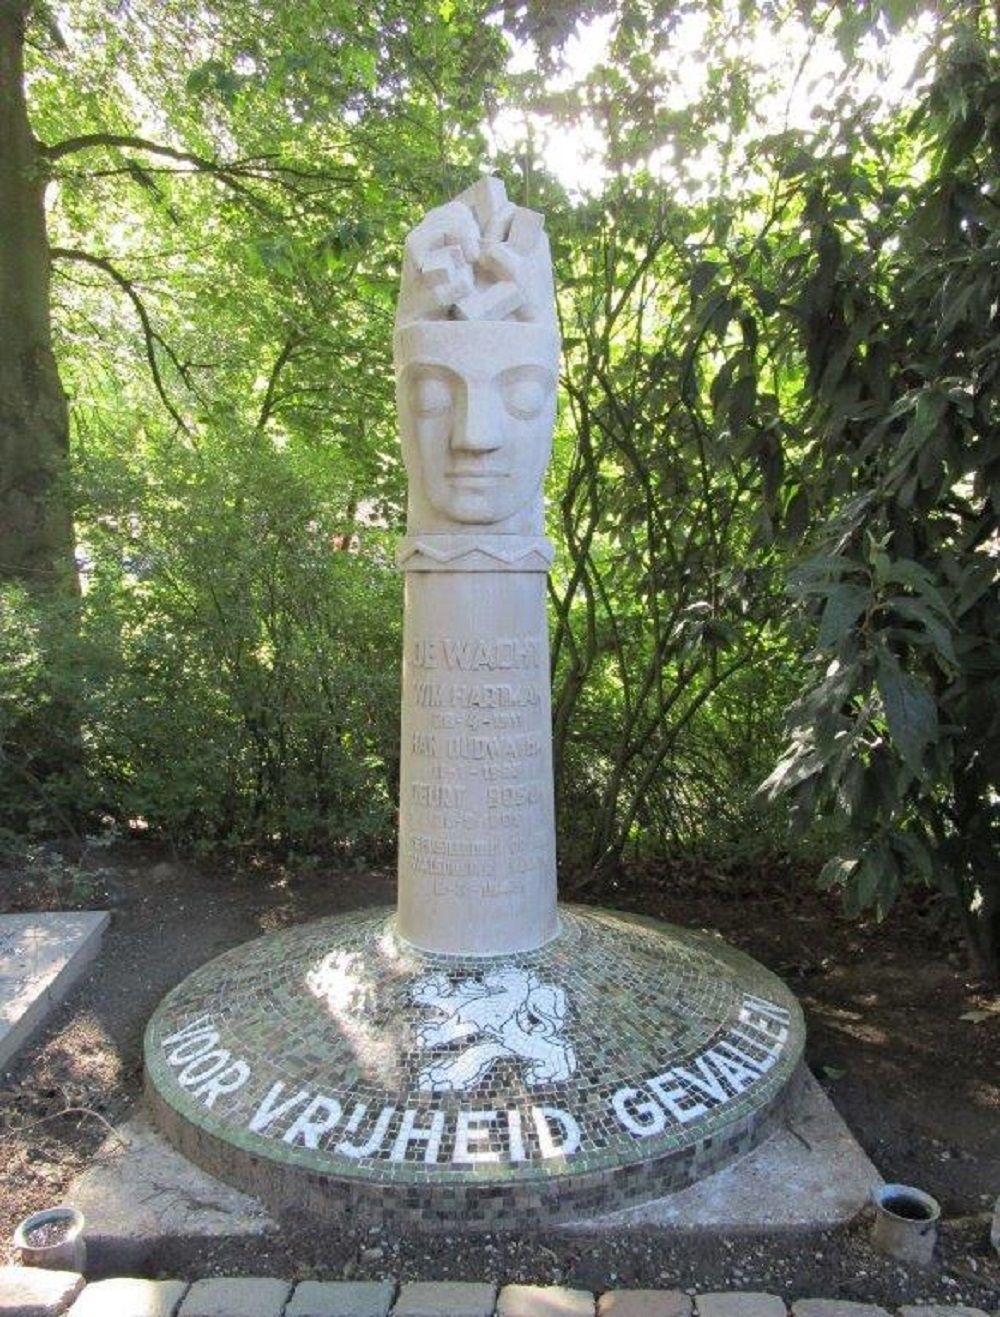 Memorial 'De Wacht' General Cemetery Crooswijk #3